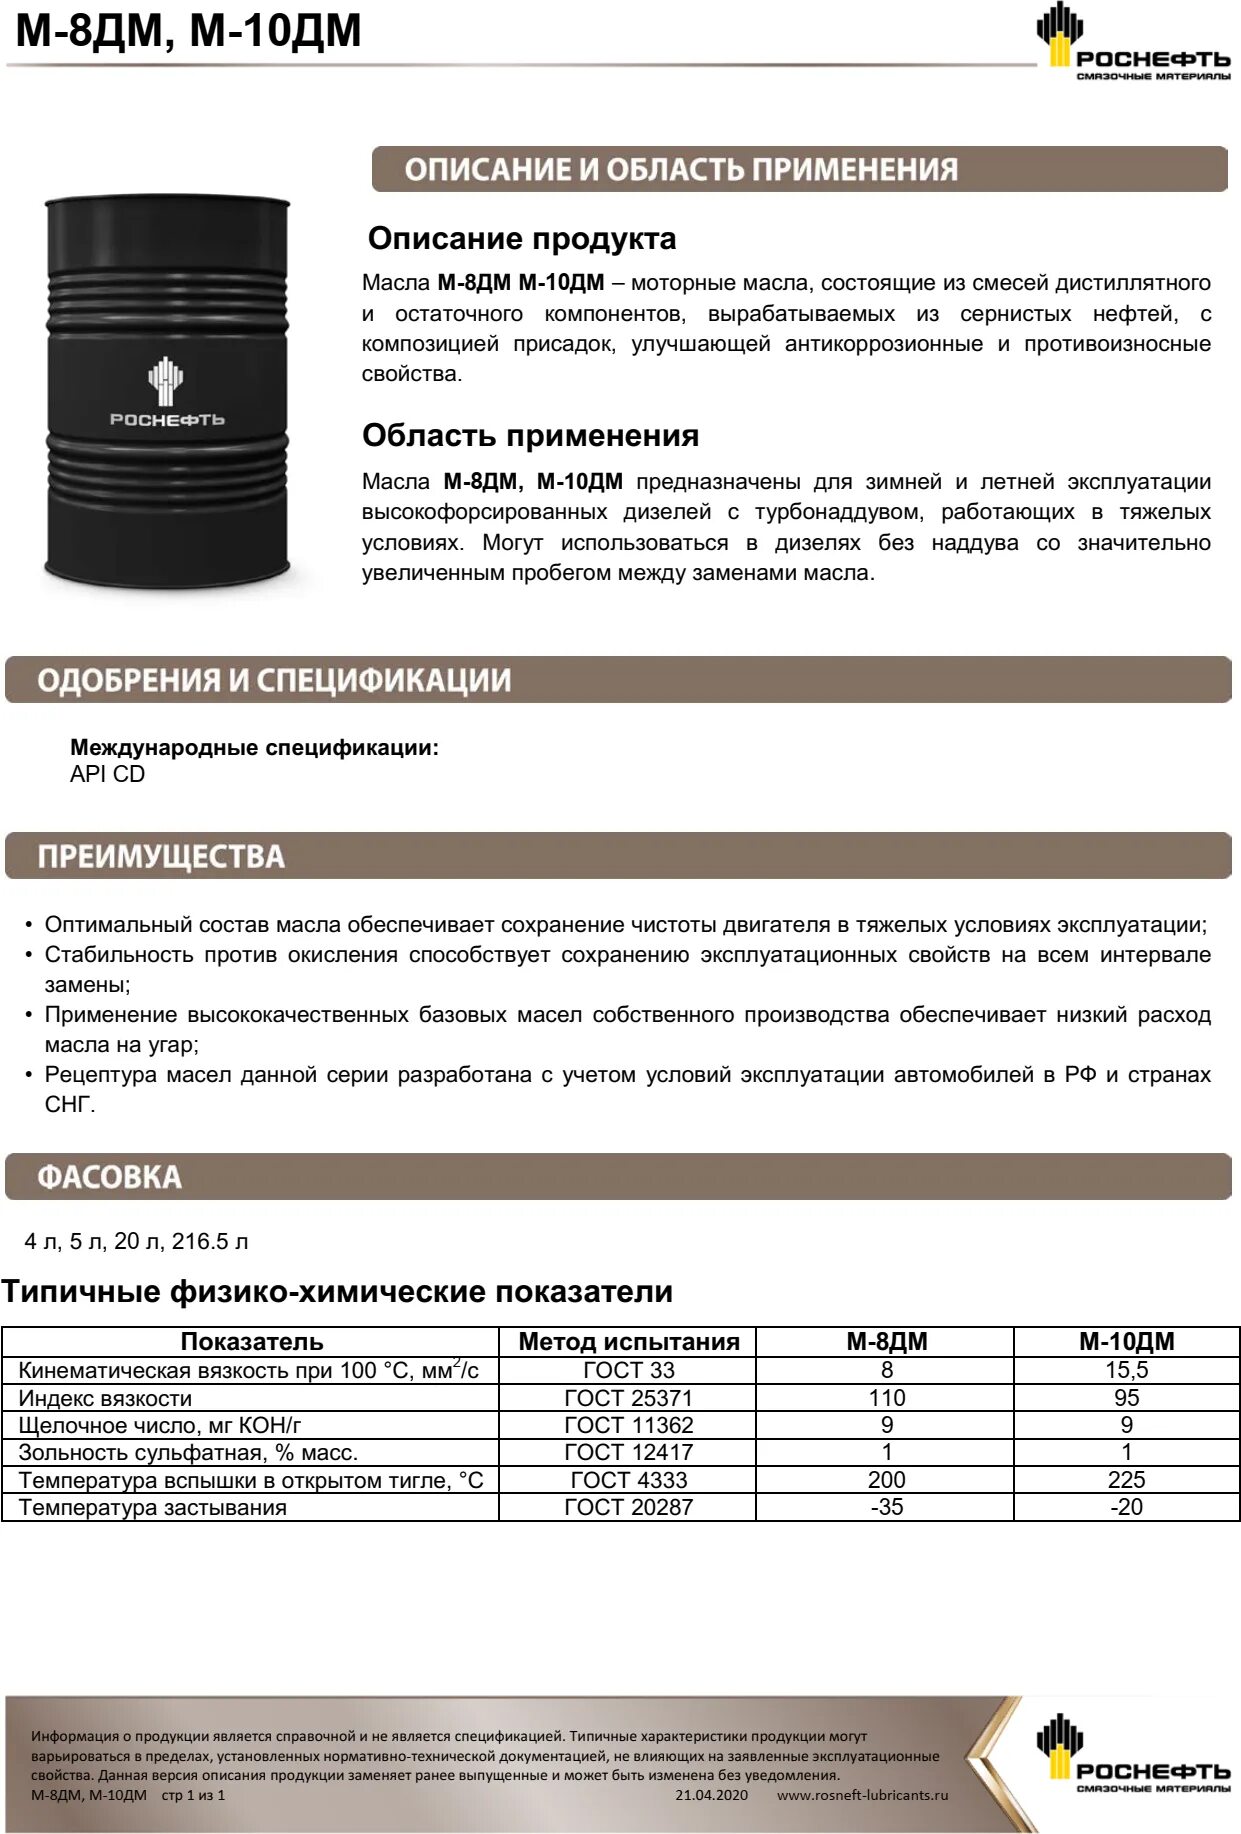 Характеристика моторного масла роснефть. Минеральное моторное масло м-8дм Роснефть. Масло Роснефть м8дм 180 кг/200 л. М8дм Rosneft SAE 20 API CD 20л. Масло Роснефть м10дм характеристики.